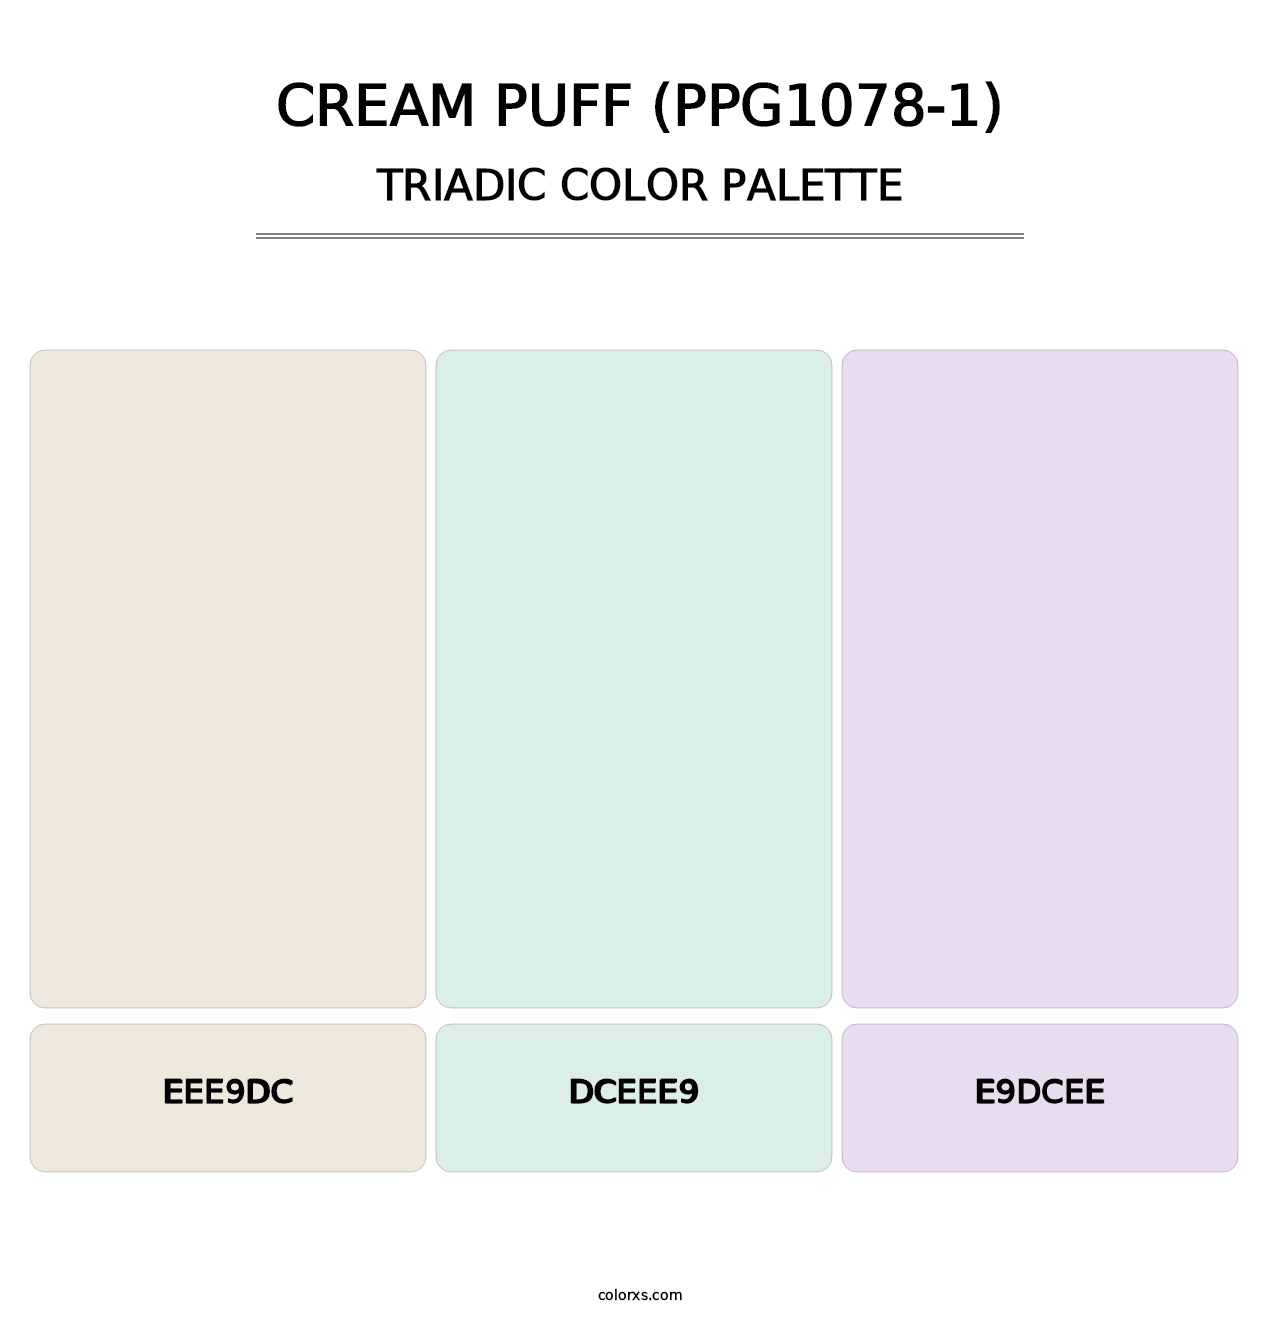 Cream Puff (PPG1078-1) - Triadic Color Palette